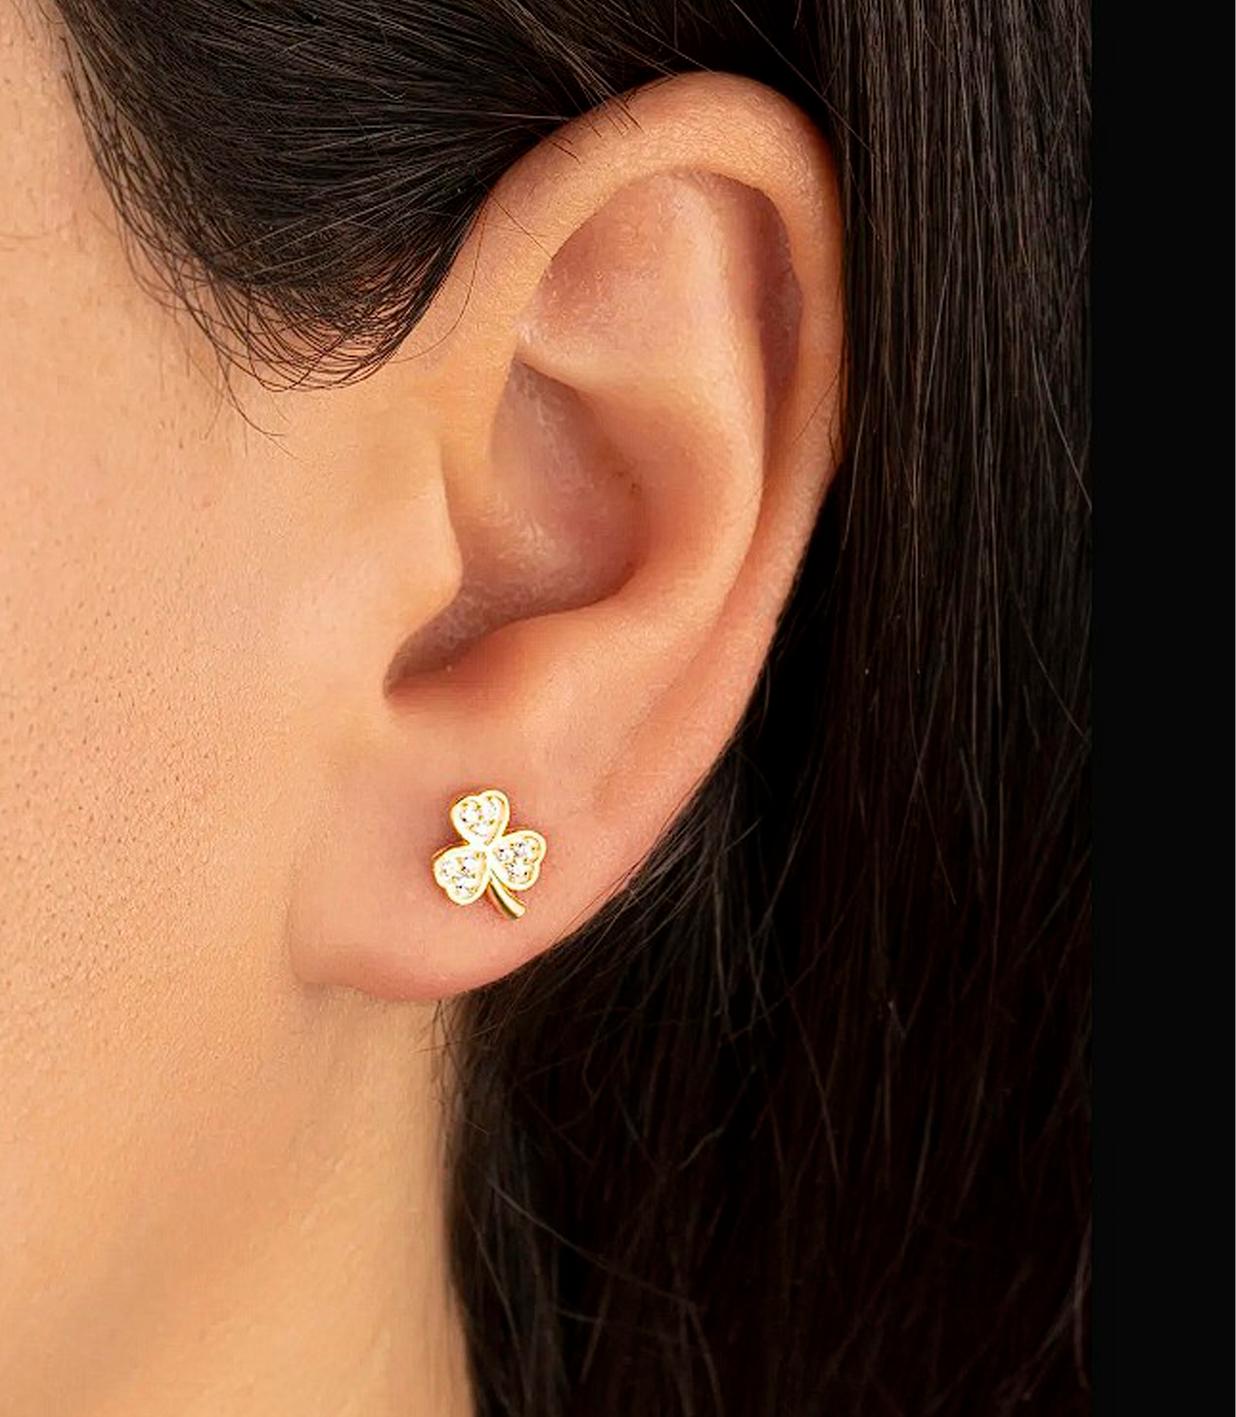 Modern Dainty 3 Petal Flower Stud Earrings. 